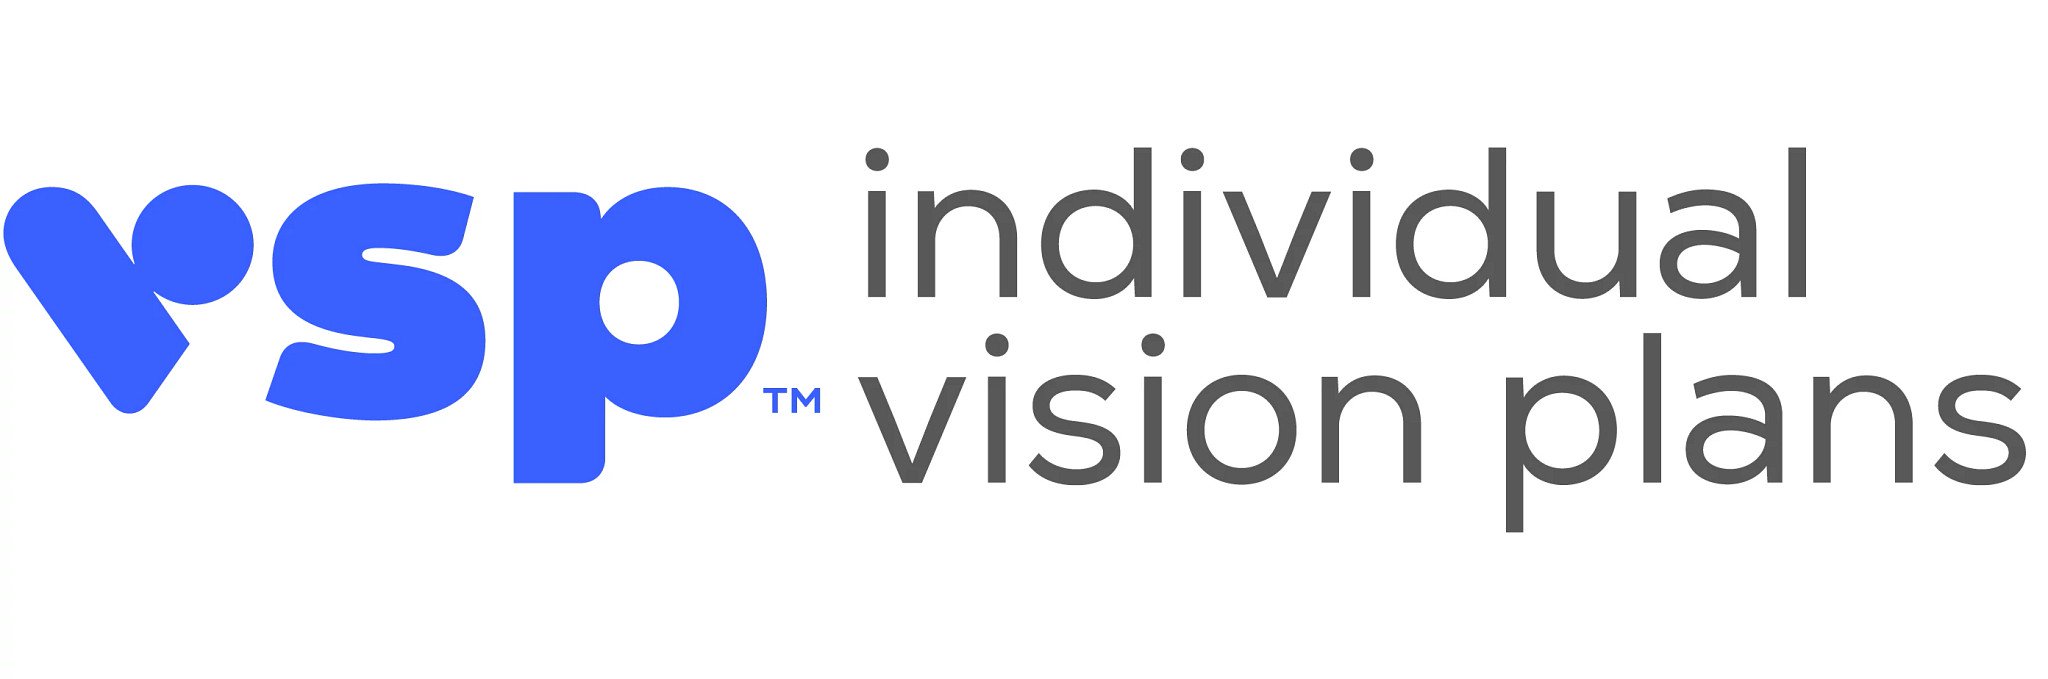 VSP individual Vision Plans